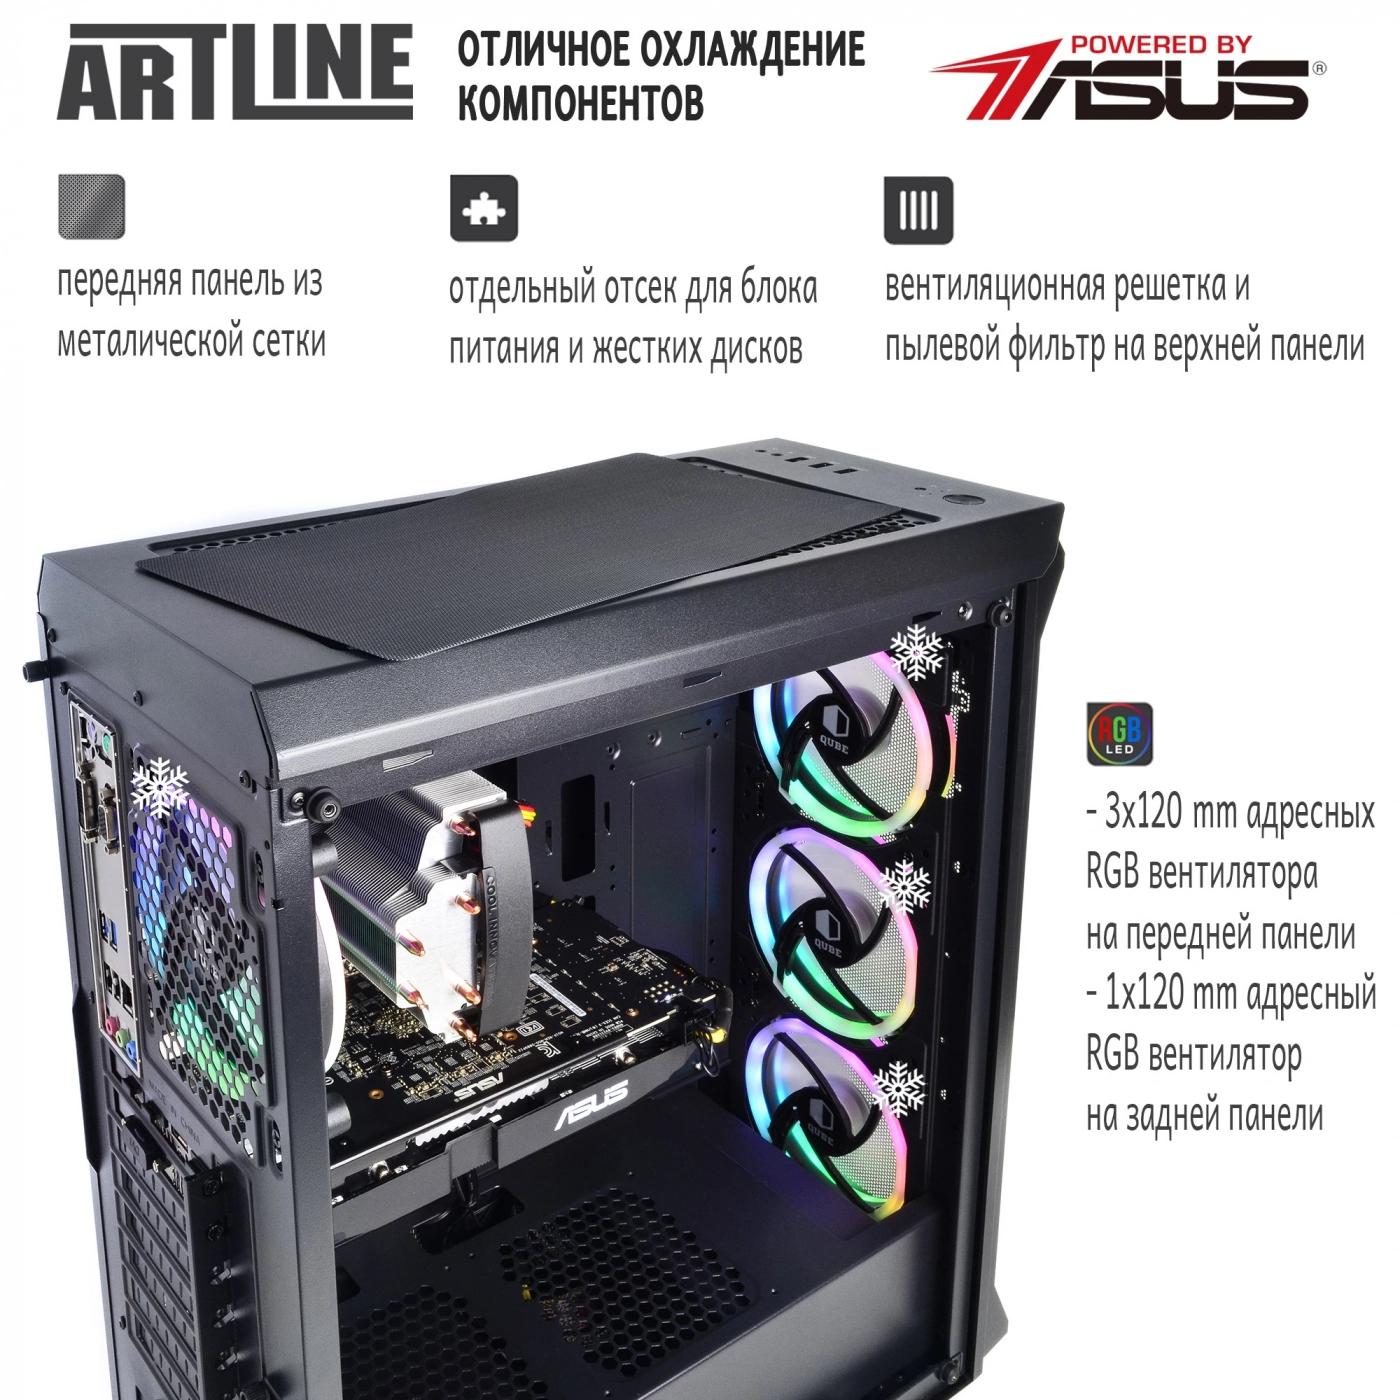 Купить Компьютер ARTLINE Gaming X77v35 - фото 2